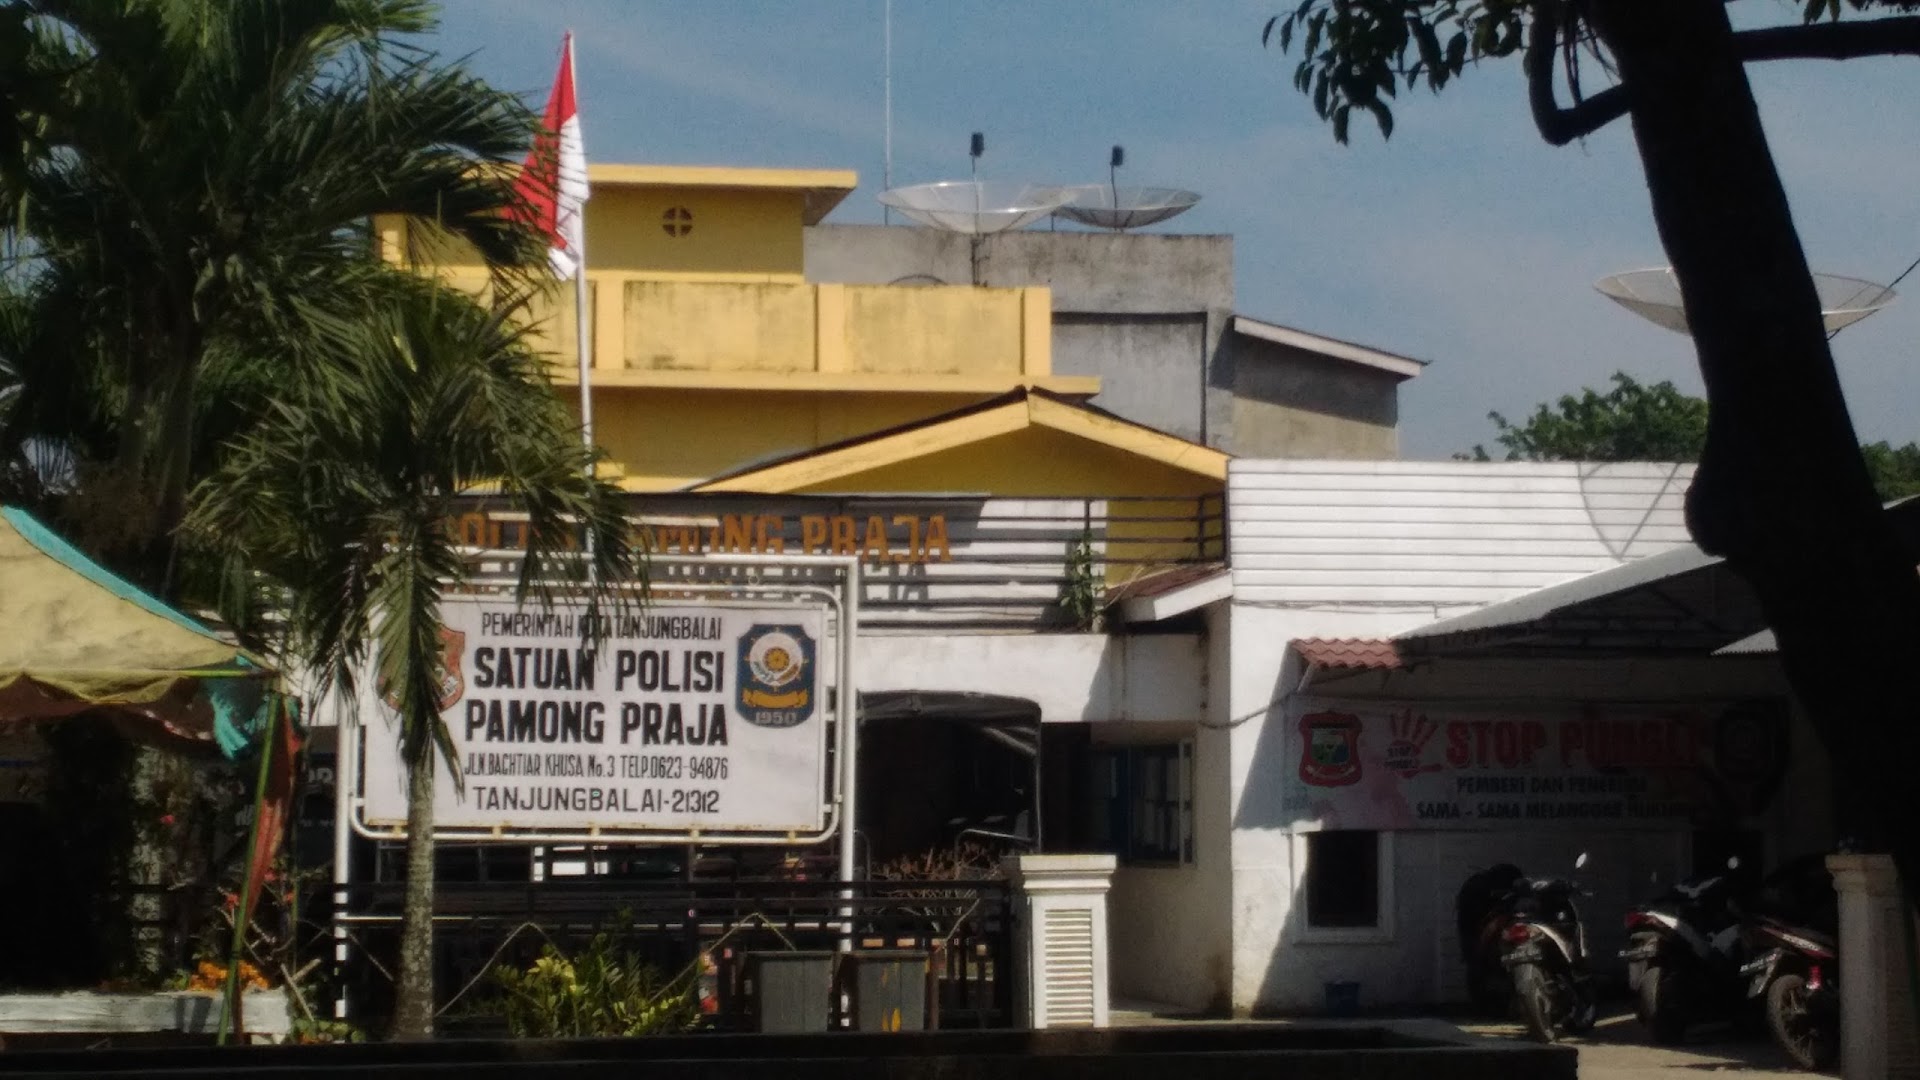 Gambar Satuan Polisi Pamong Praja Tanjungbalai